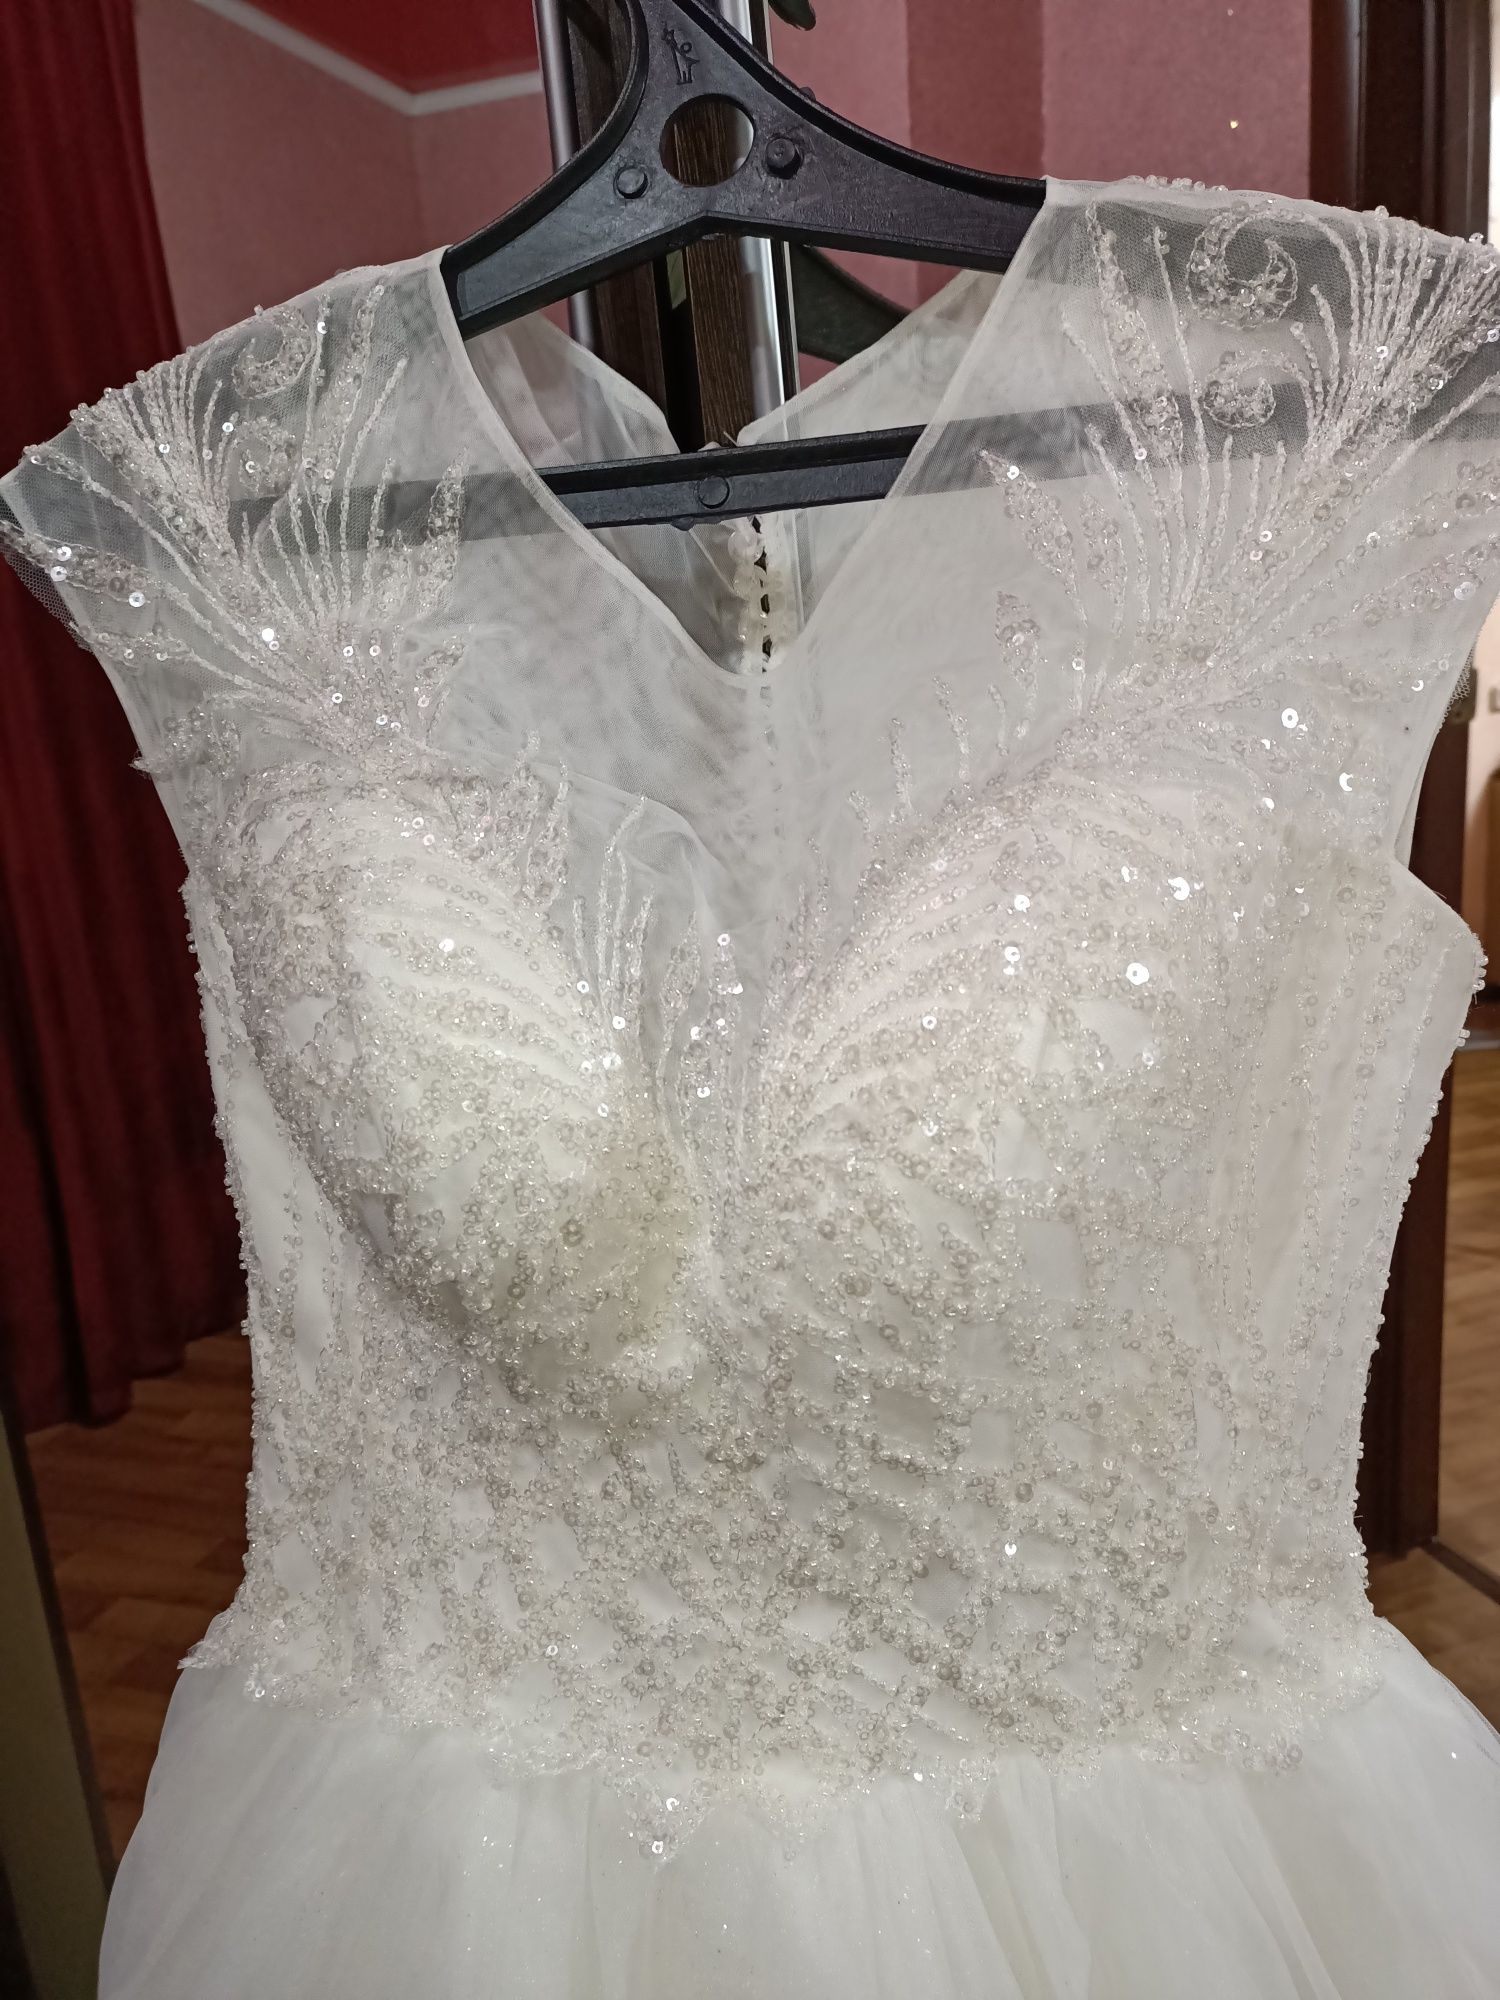 Свадебное платье Флер